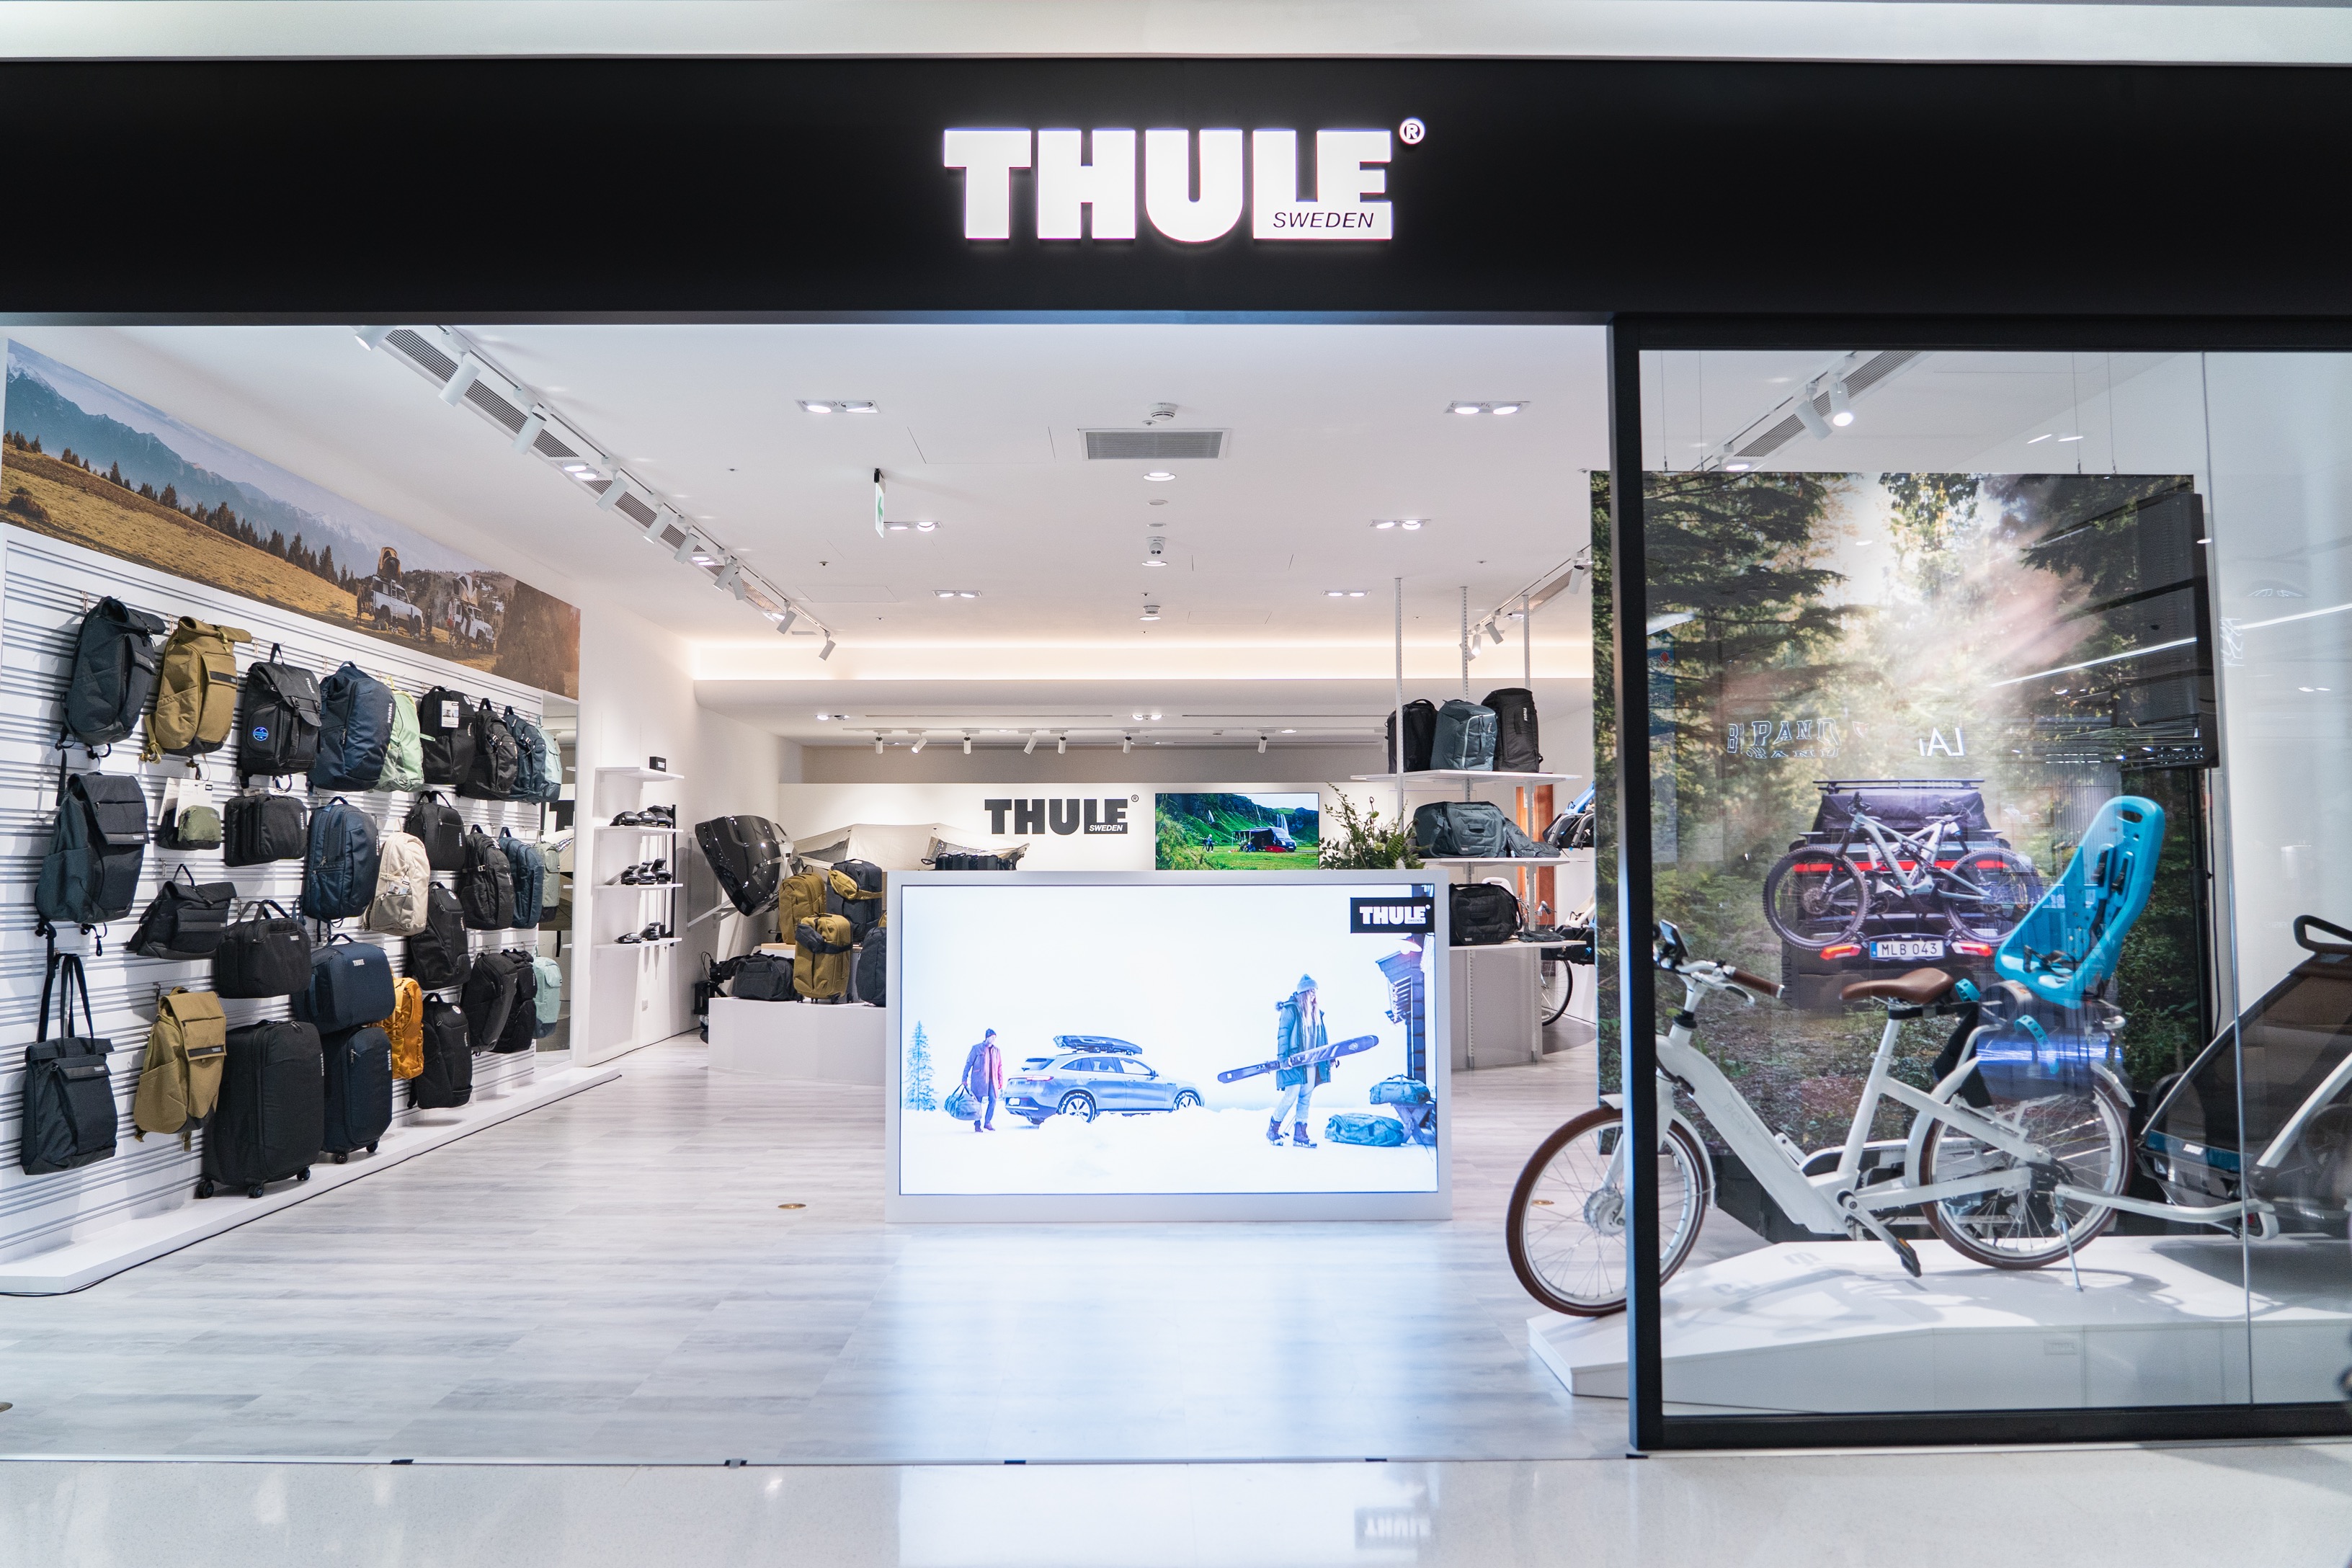 全球戶外生活精品品牌THULE 全台第一家生活概念店 領先全球與百貨獨創一站式車用裝備服務 立足戶外